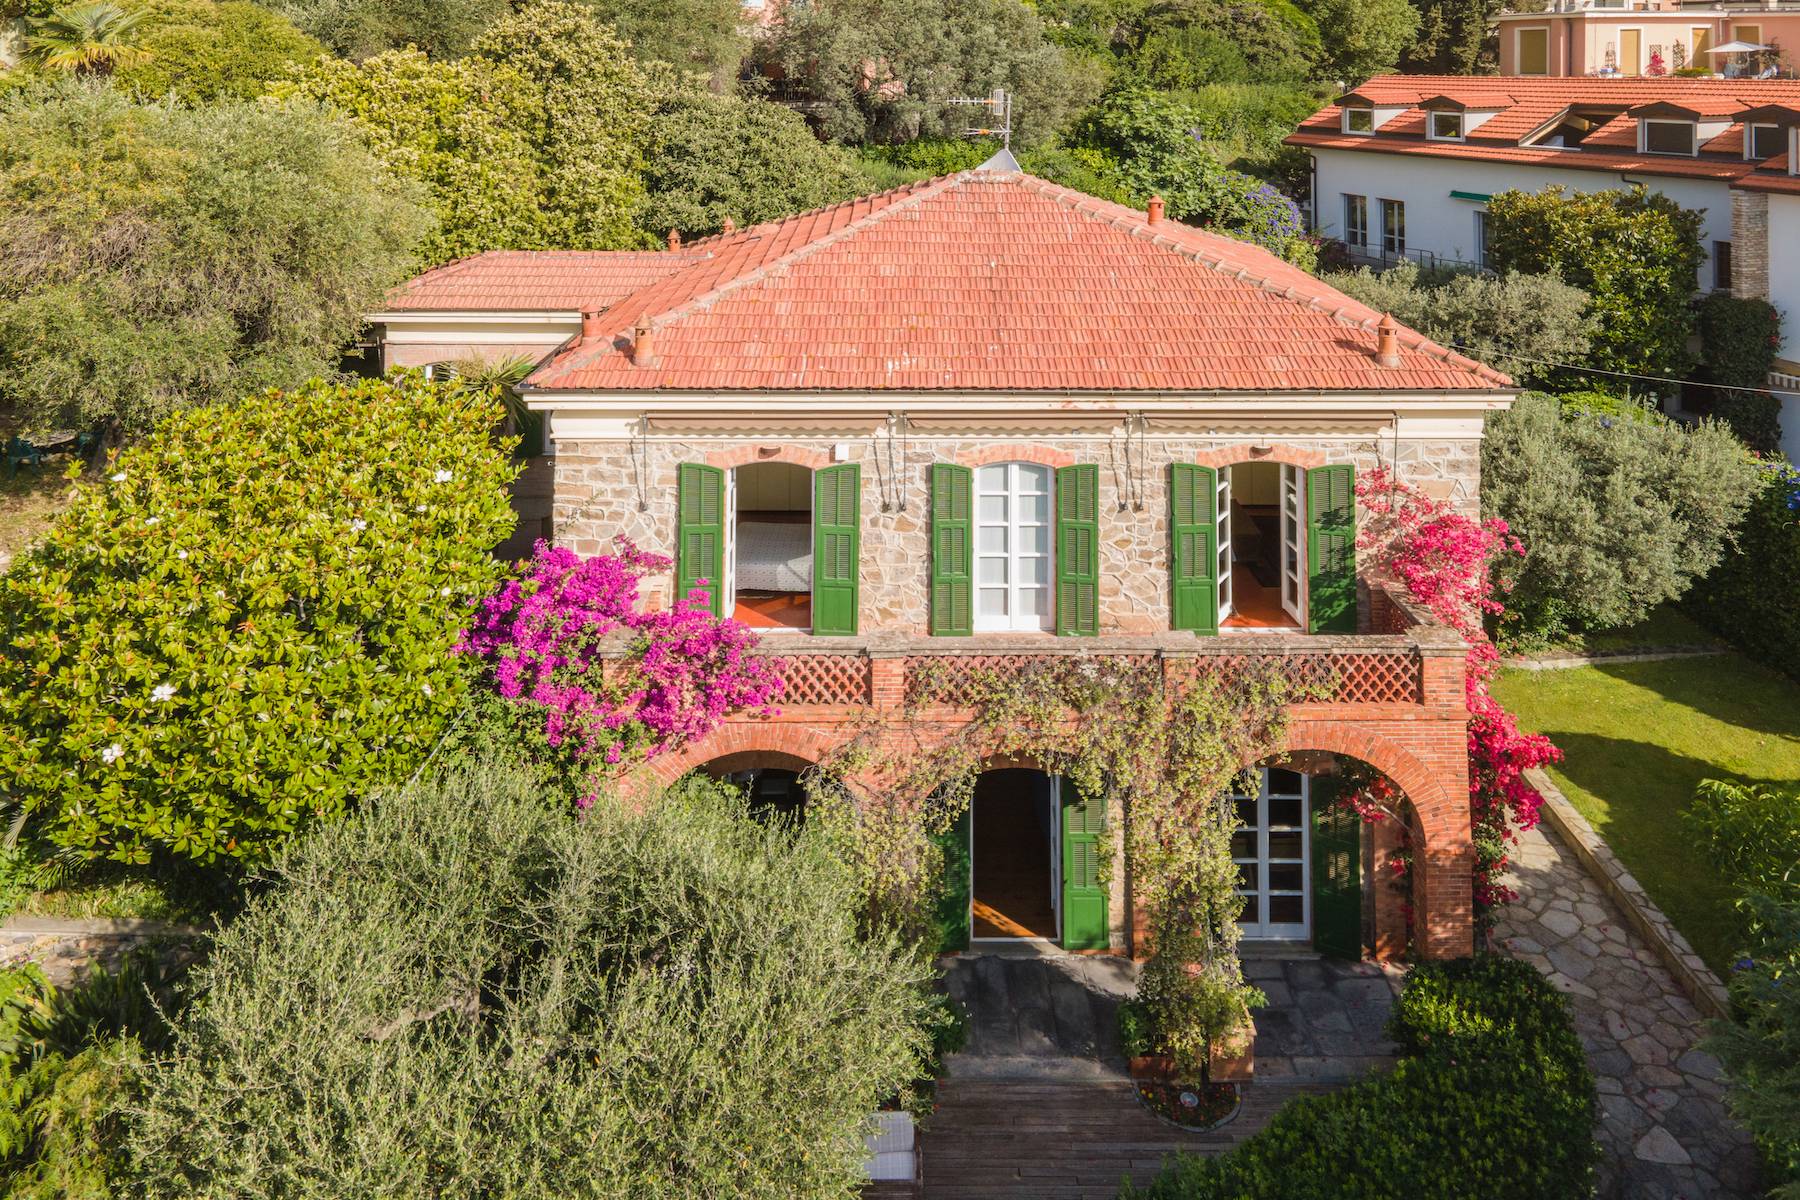 Historical villa in the heart of Alassio